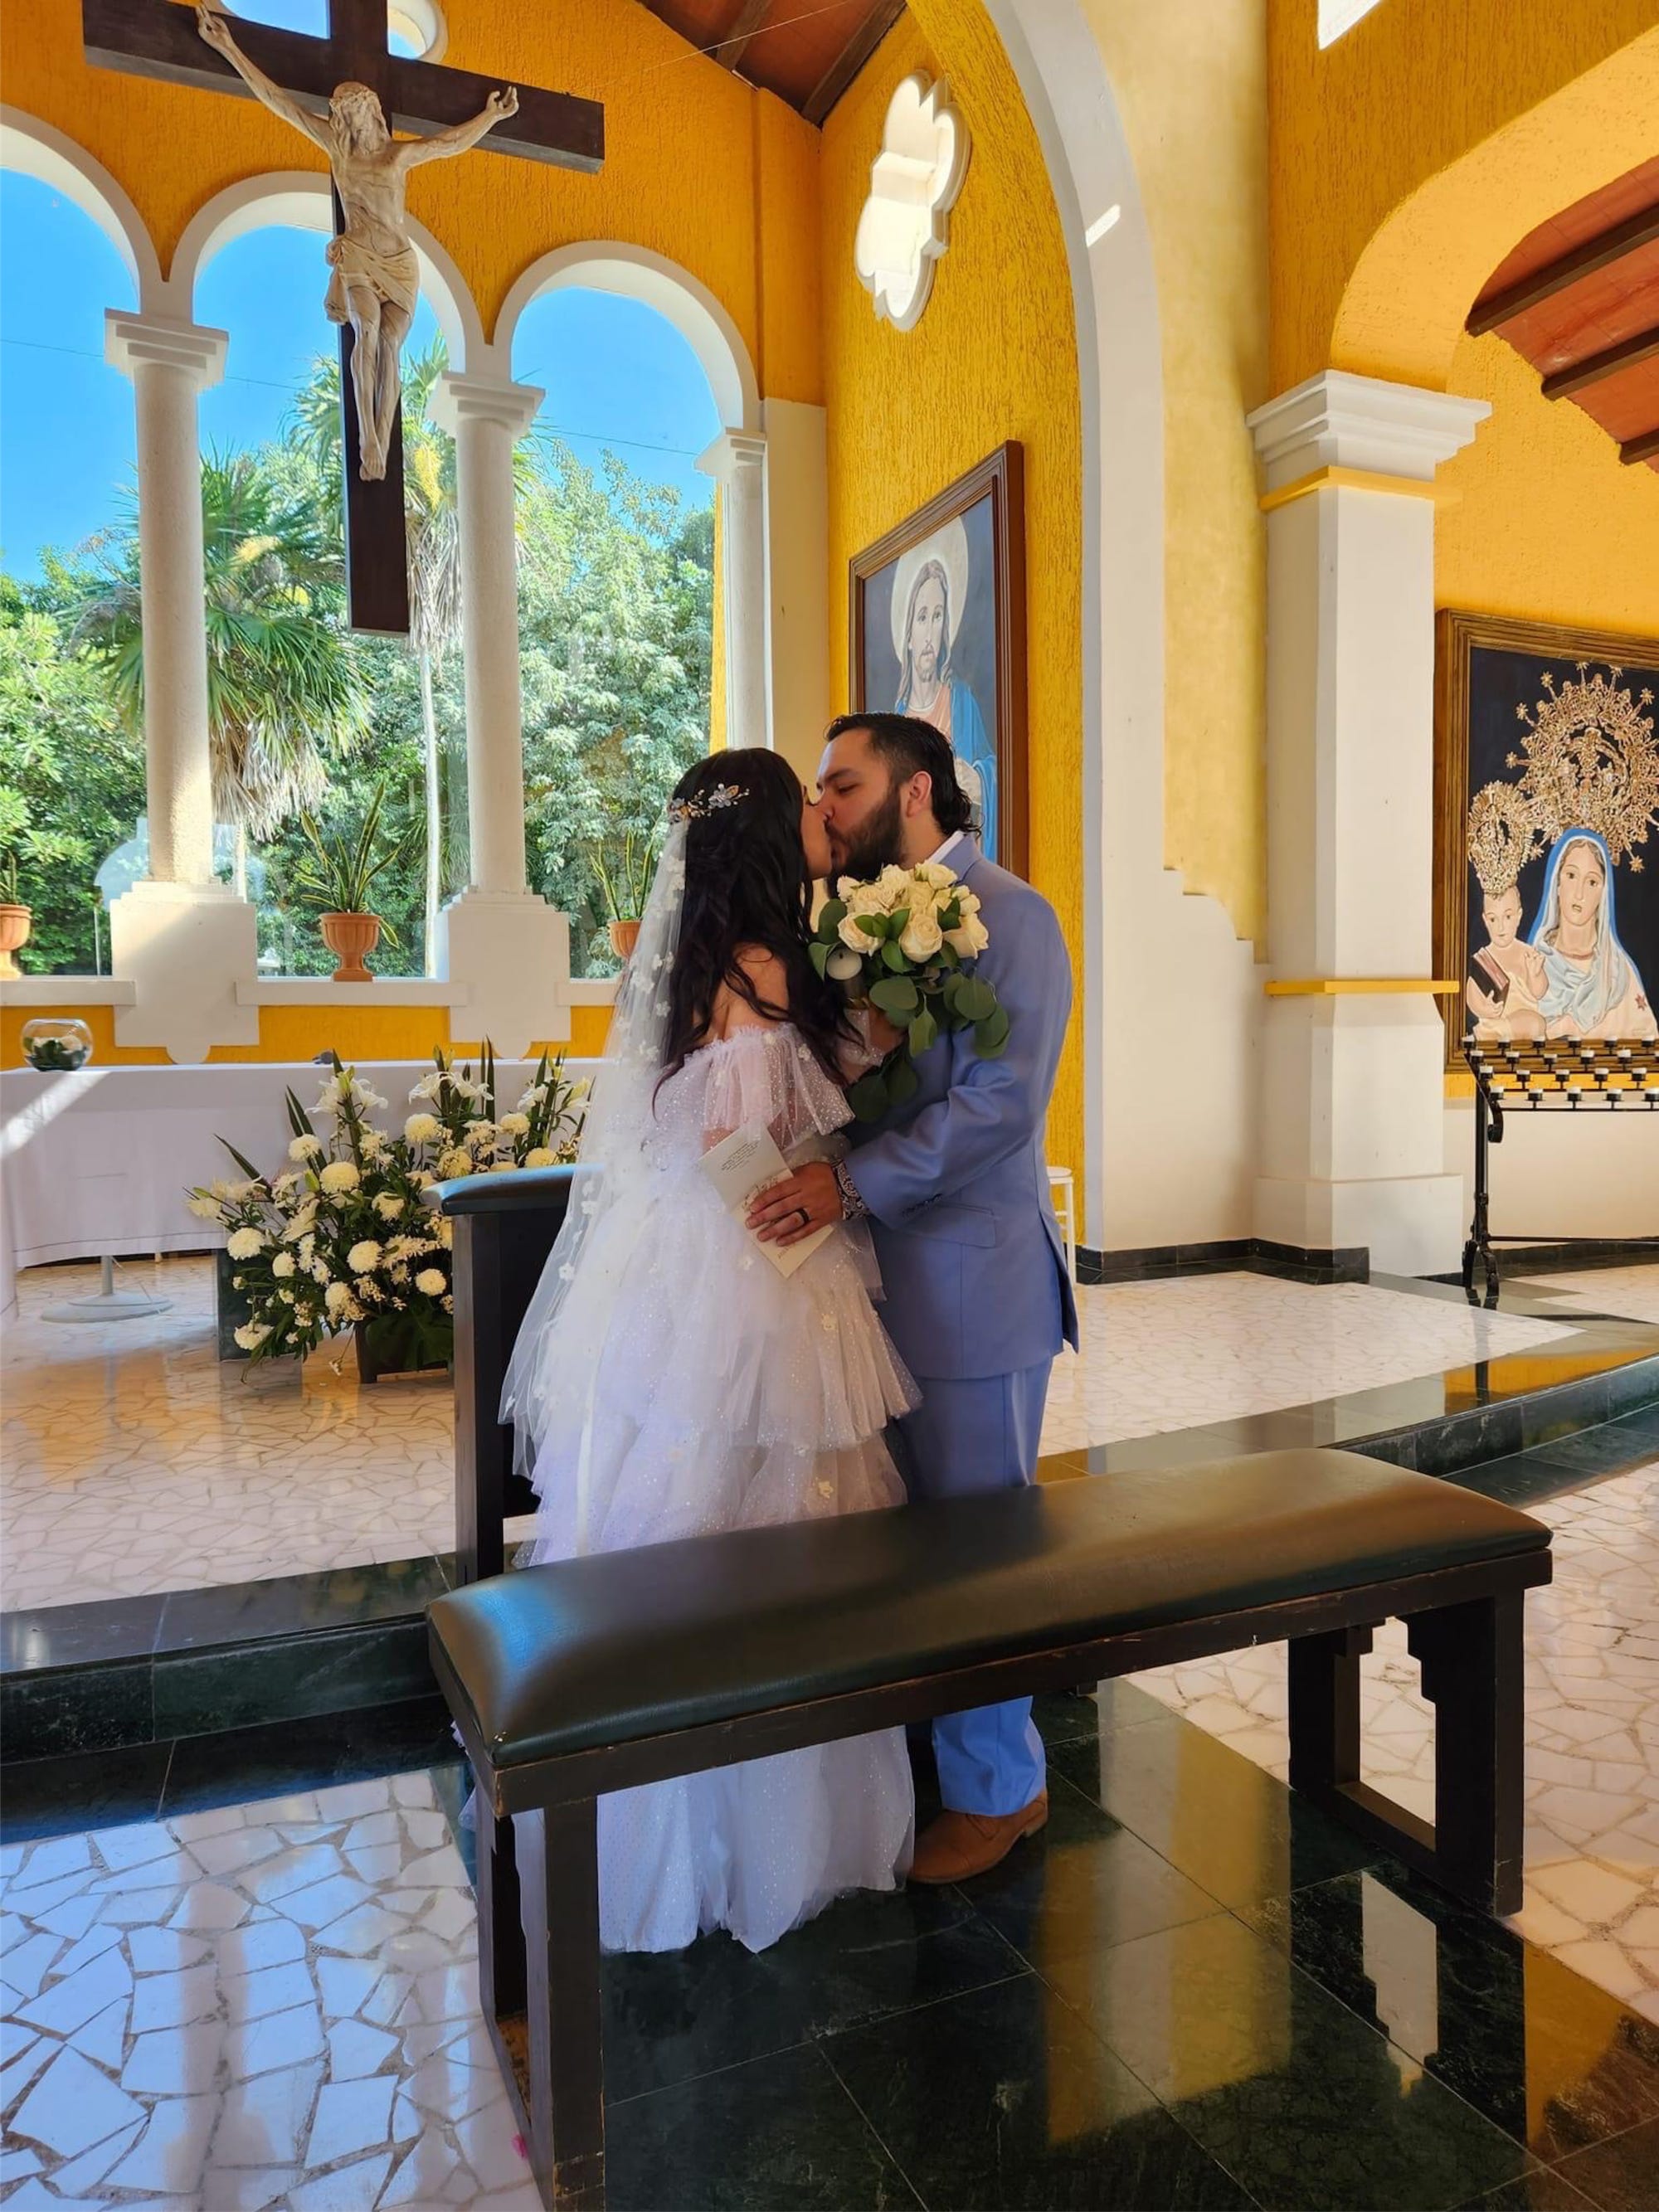 Ein Brautpaar küsst sich in einer gelben Kirche.